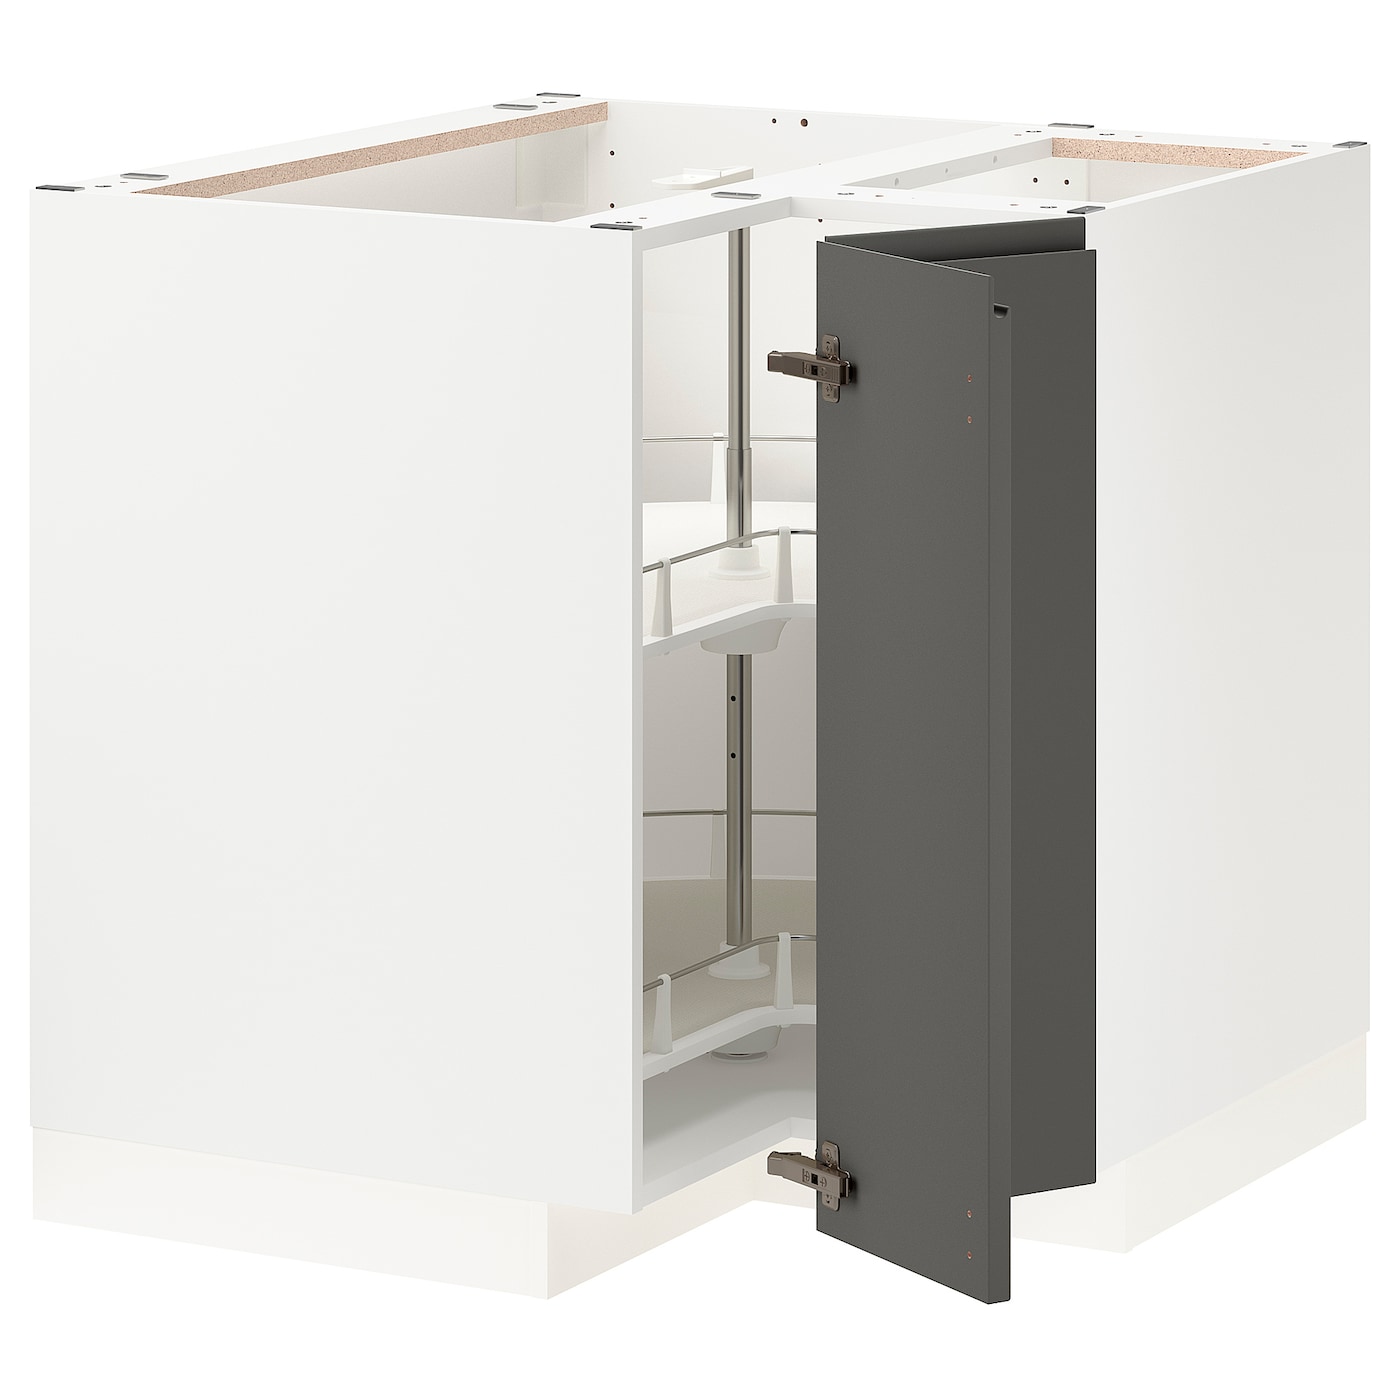 Напольный кухонный шкаф  - IKEA METOD, 88x90x87,5см, белый/серый, МЕТОД ИКЕА